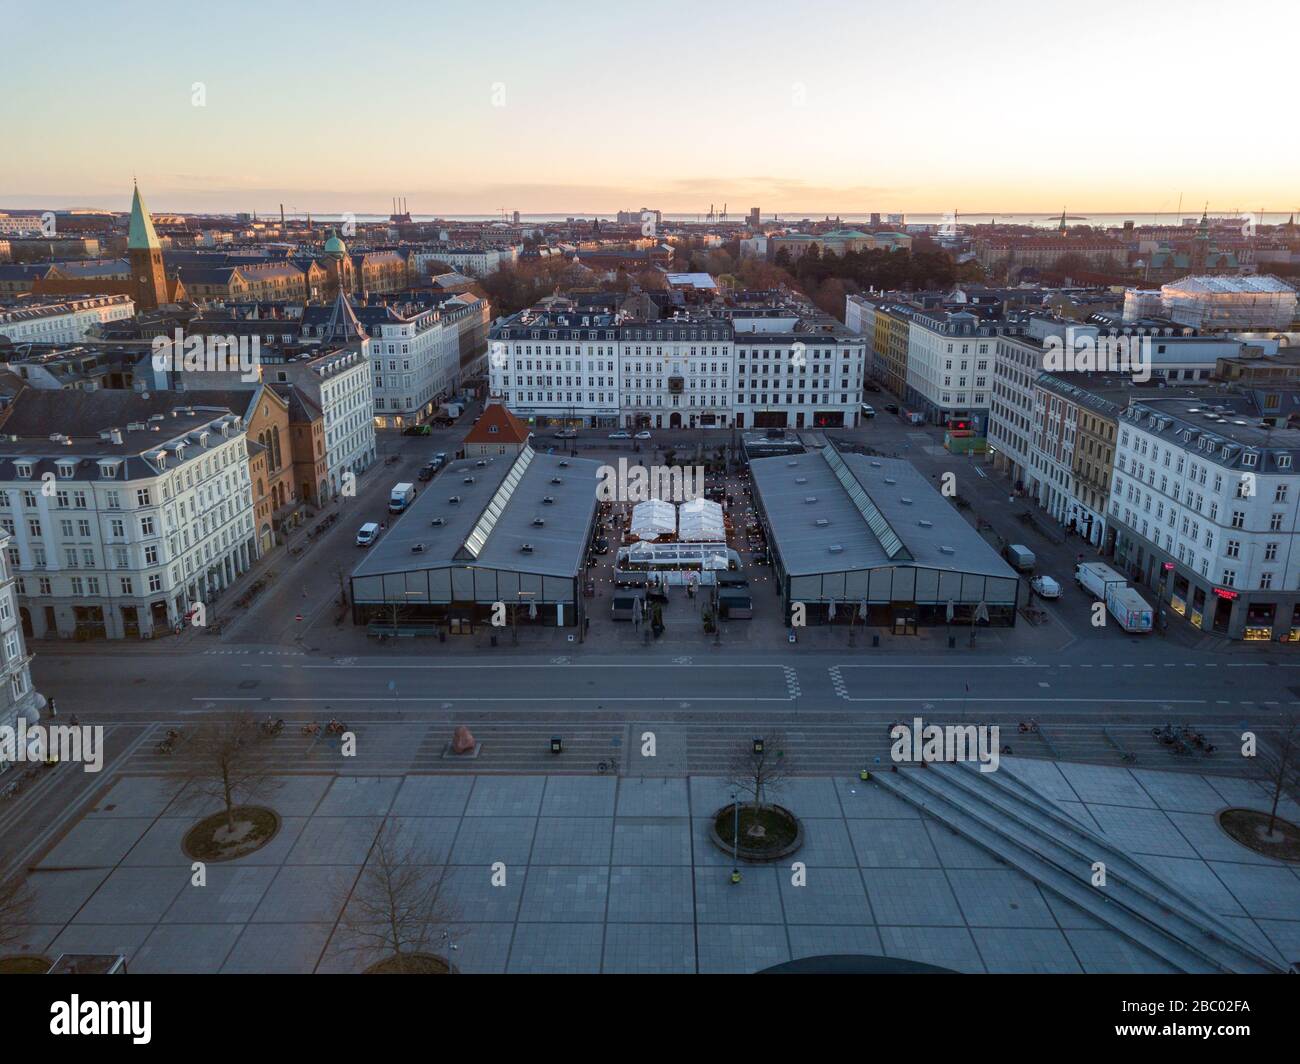 Torvehallerne in Copenhagen, Denmark Stock Photo - Alamy